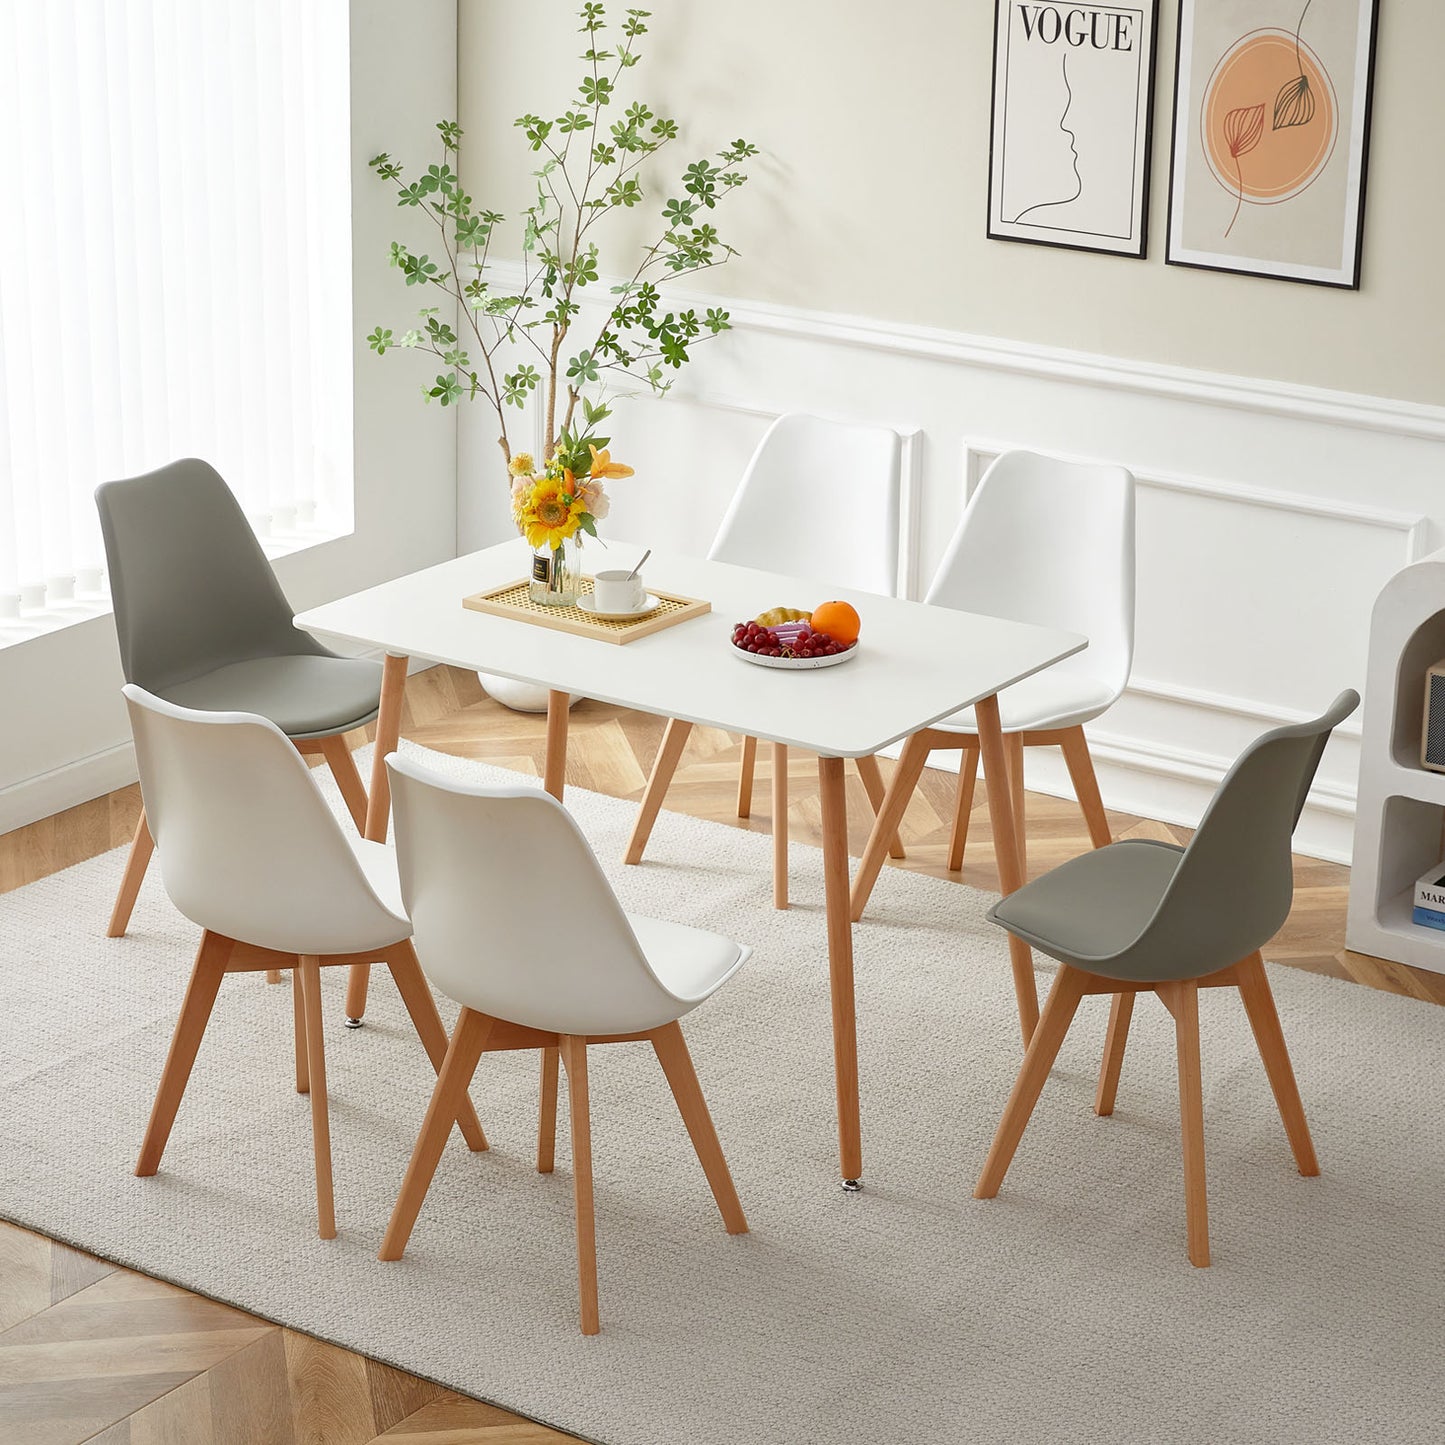 Lot de 6 chaises Scandinaves au design contemporain pour salle à manger - Mélange de couleurs 4 Blanc + 2 Gris